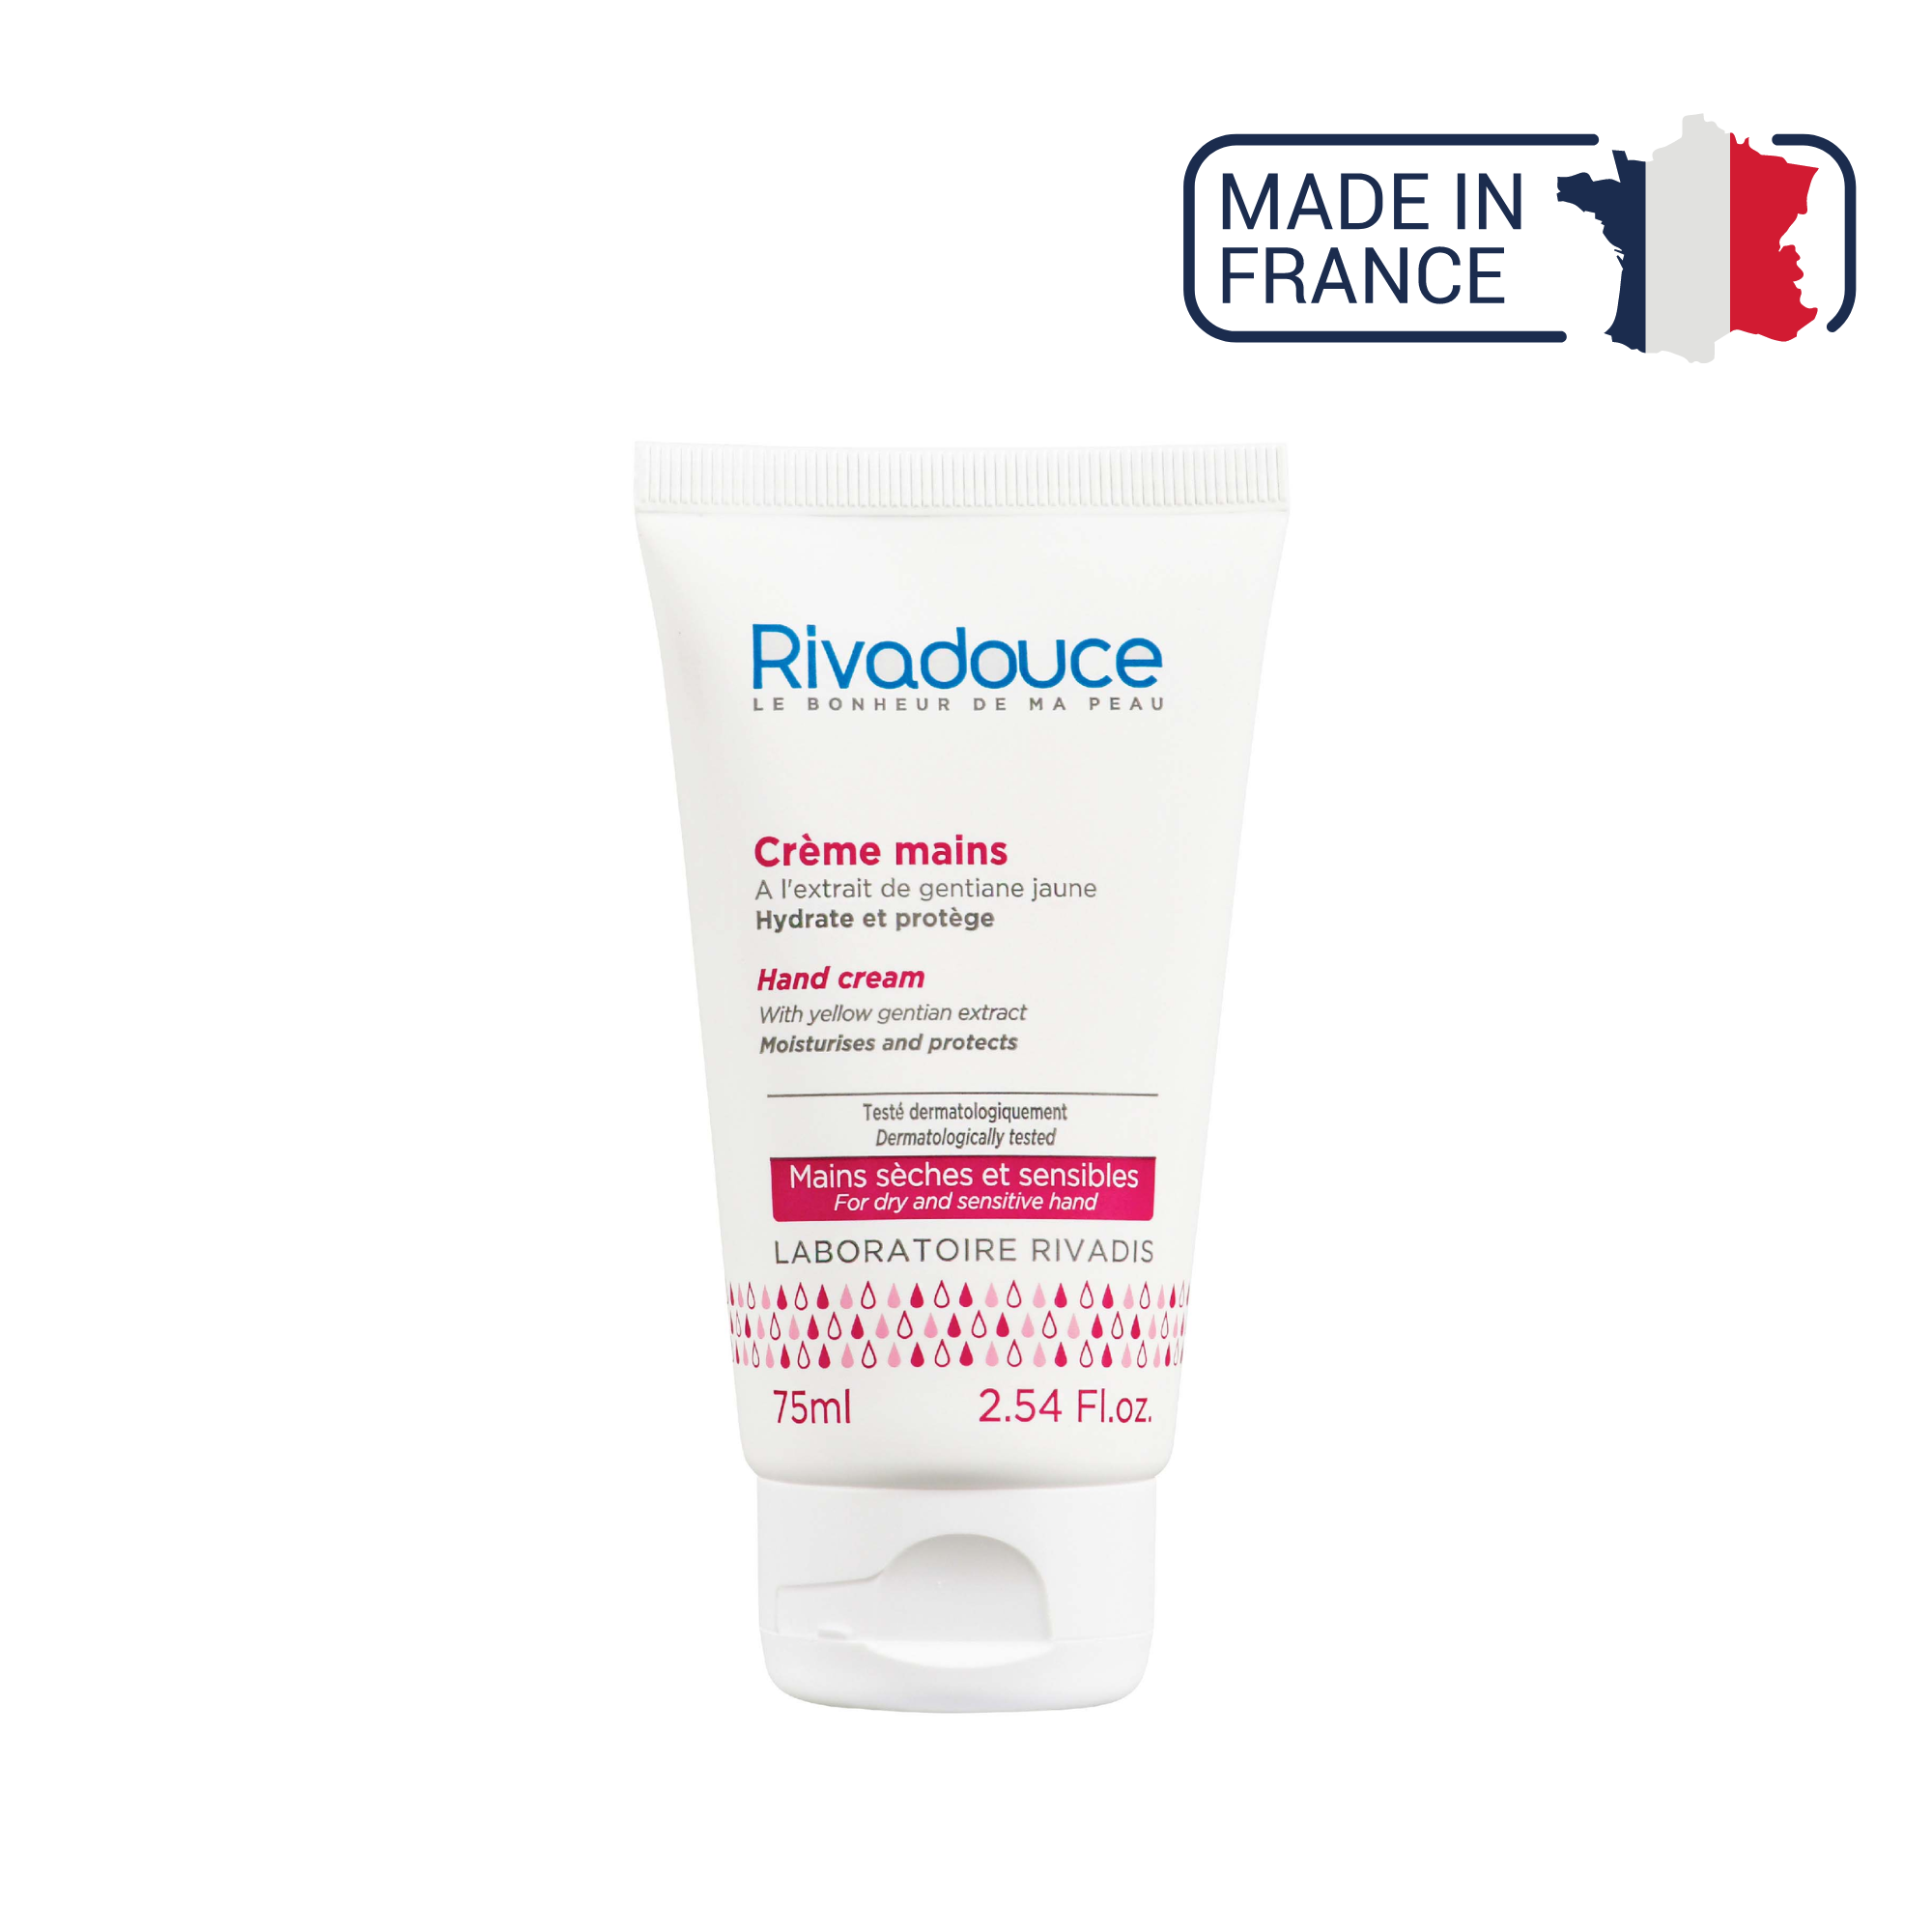 Crème mains - Hydratation intense et protection - 75ml - Rivadouce Rivadouce